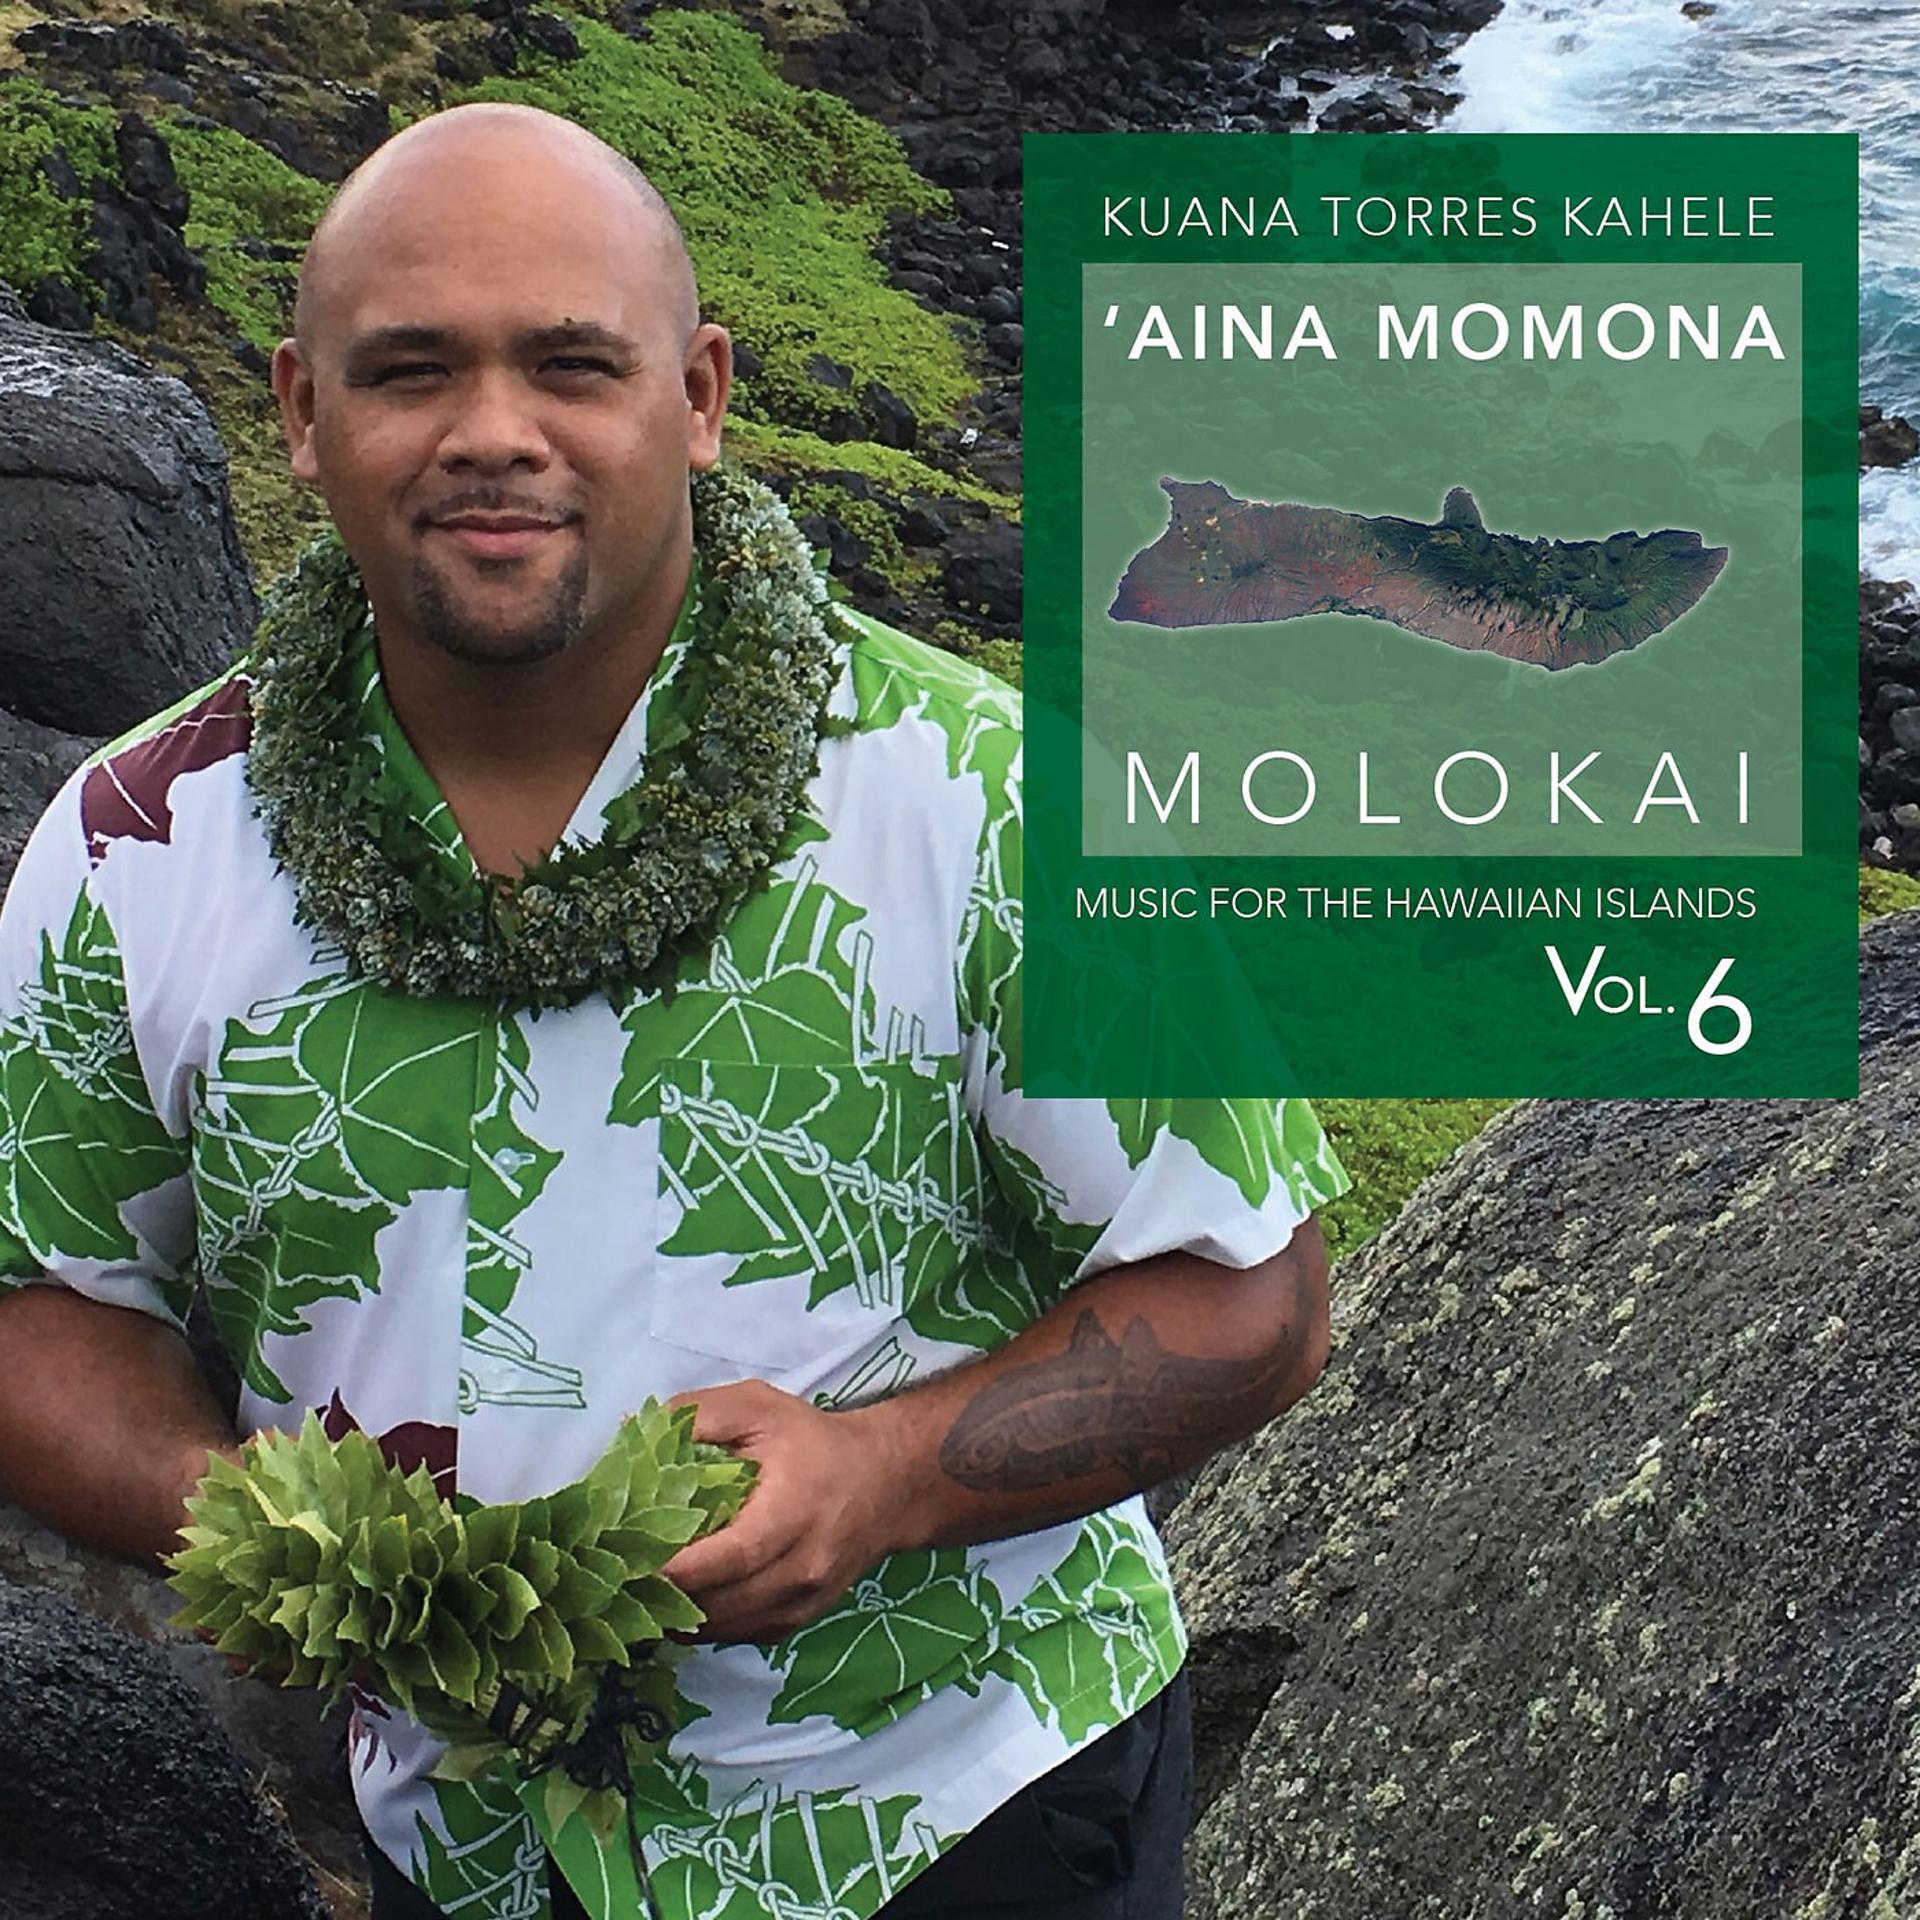 Постер альбома Music for the Hawaiian Islands, Vol. 6 (Aina Momona, Molokai)